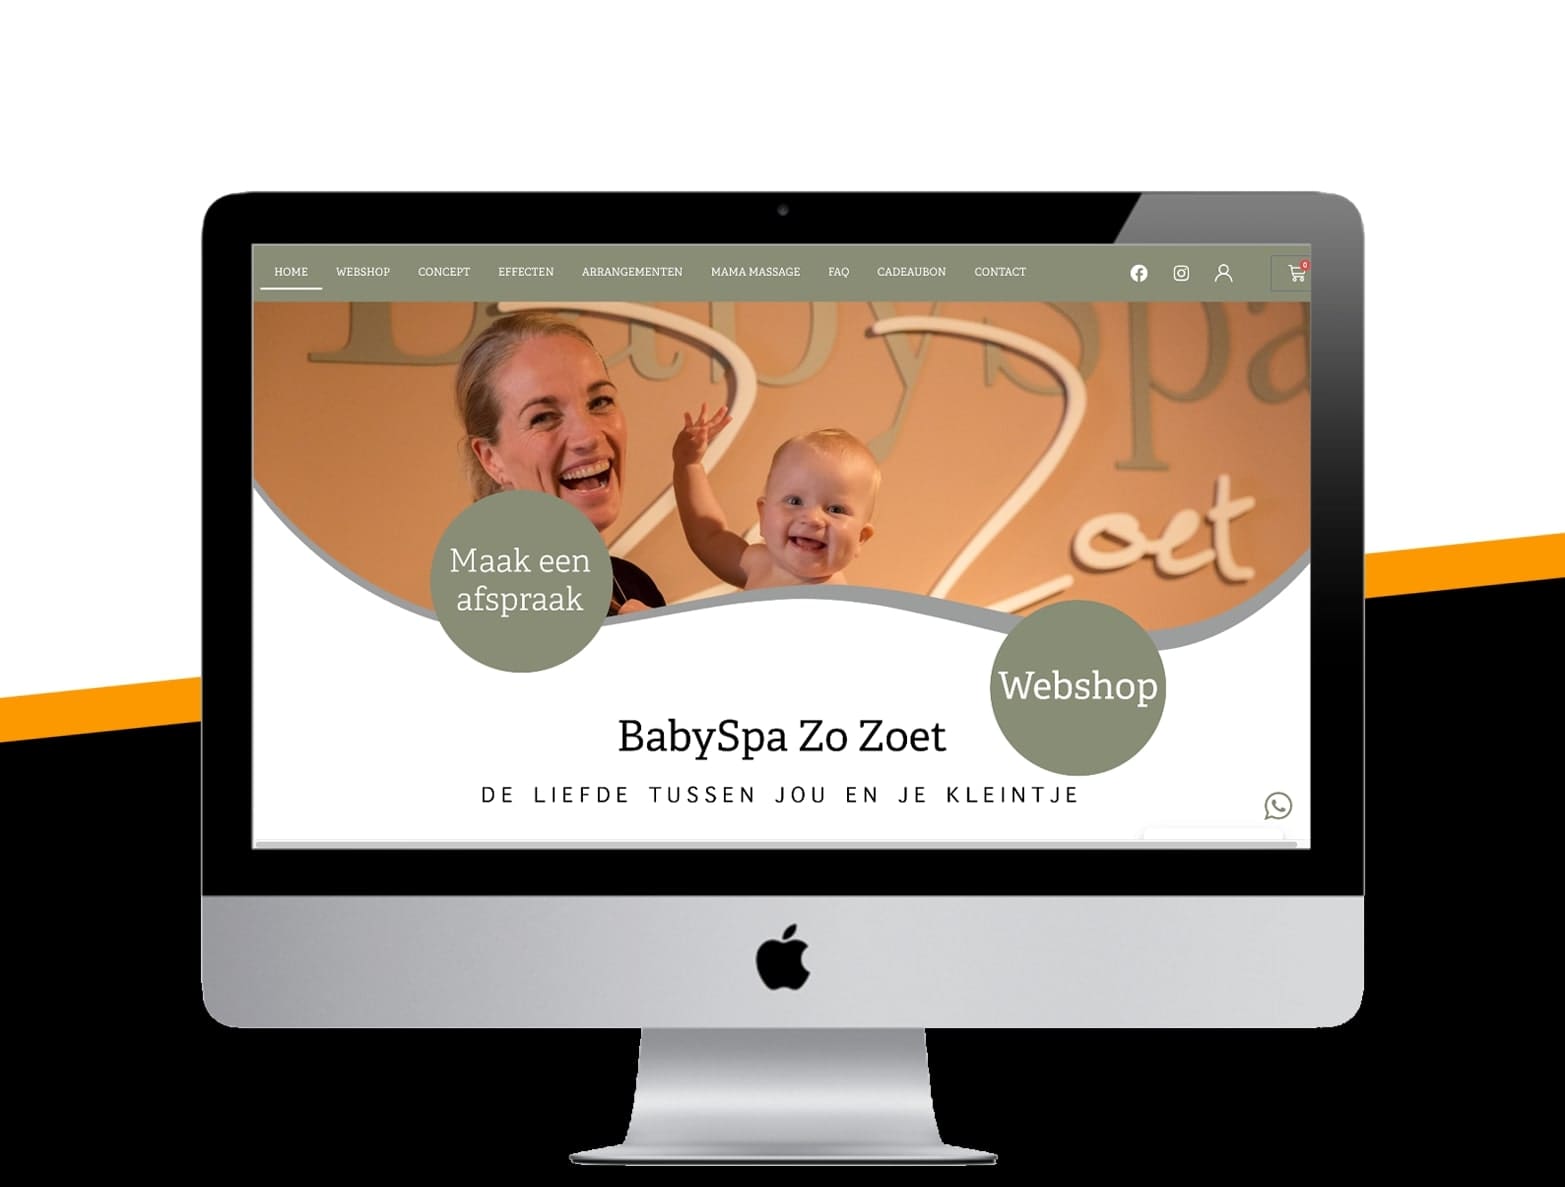 Babyspazozoet | marv-websolutions